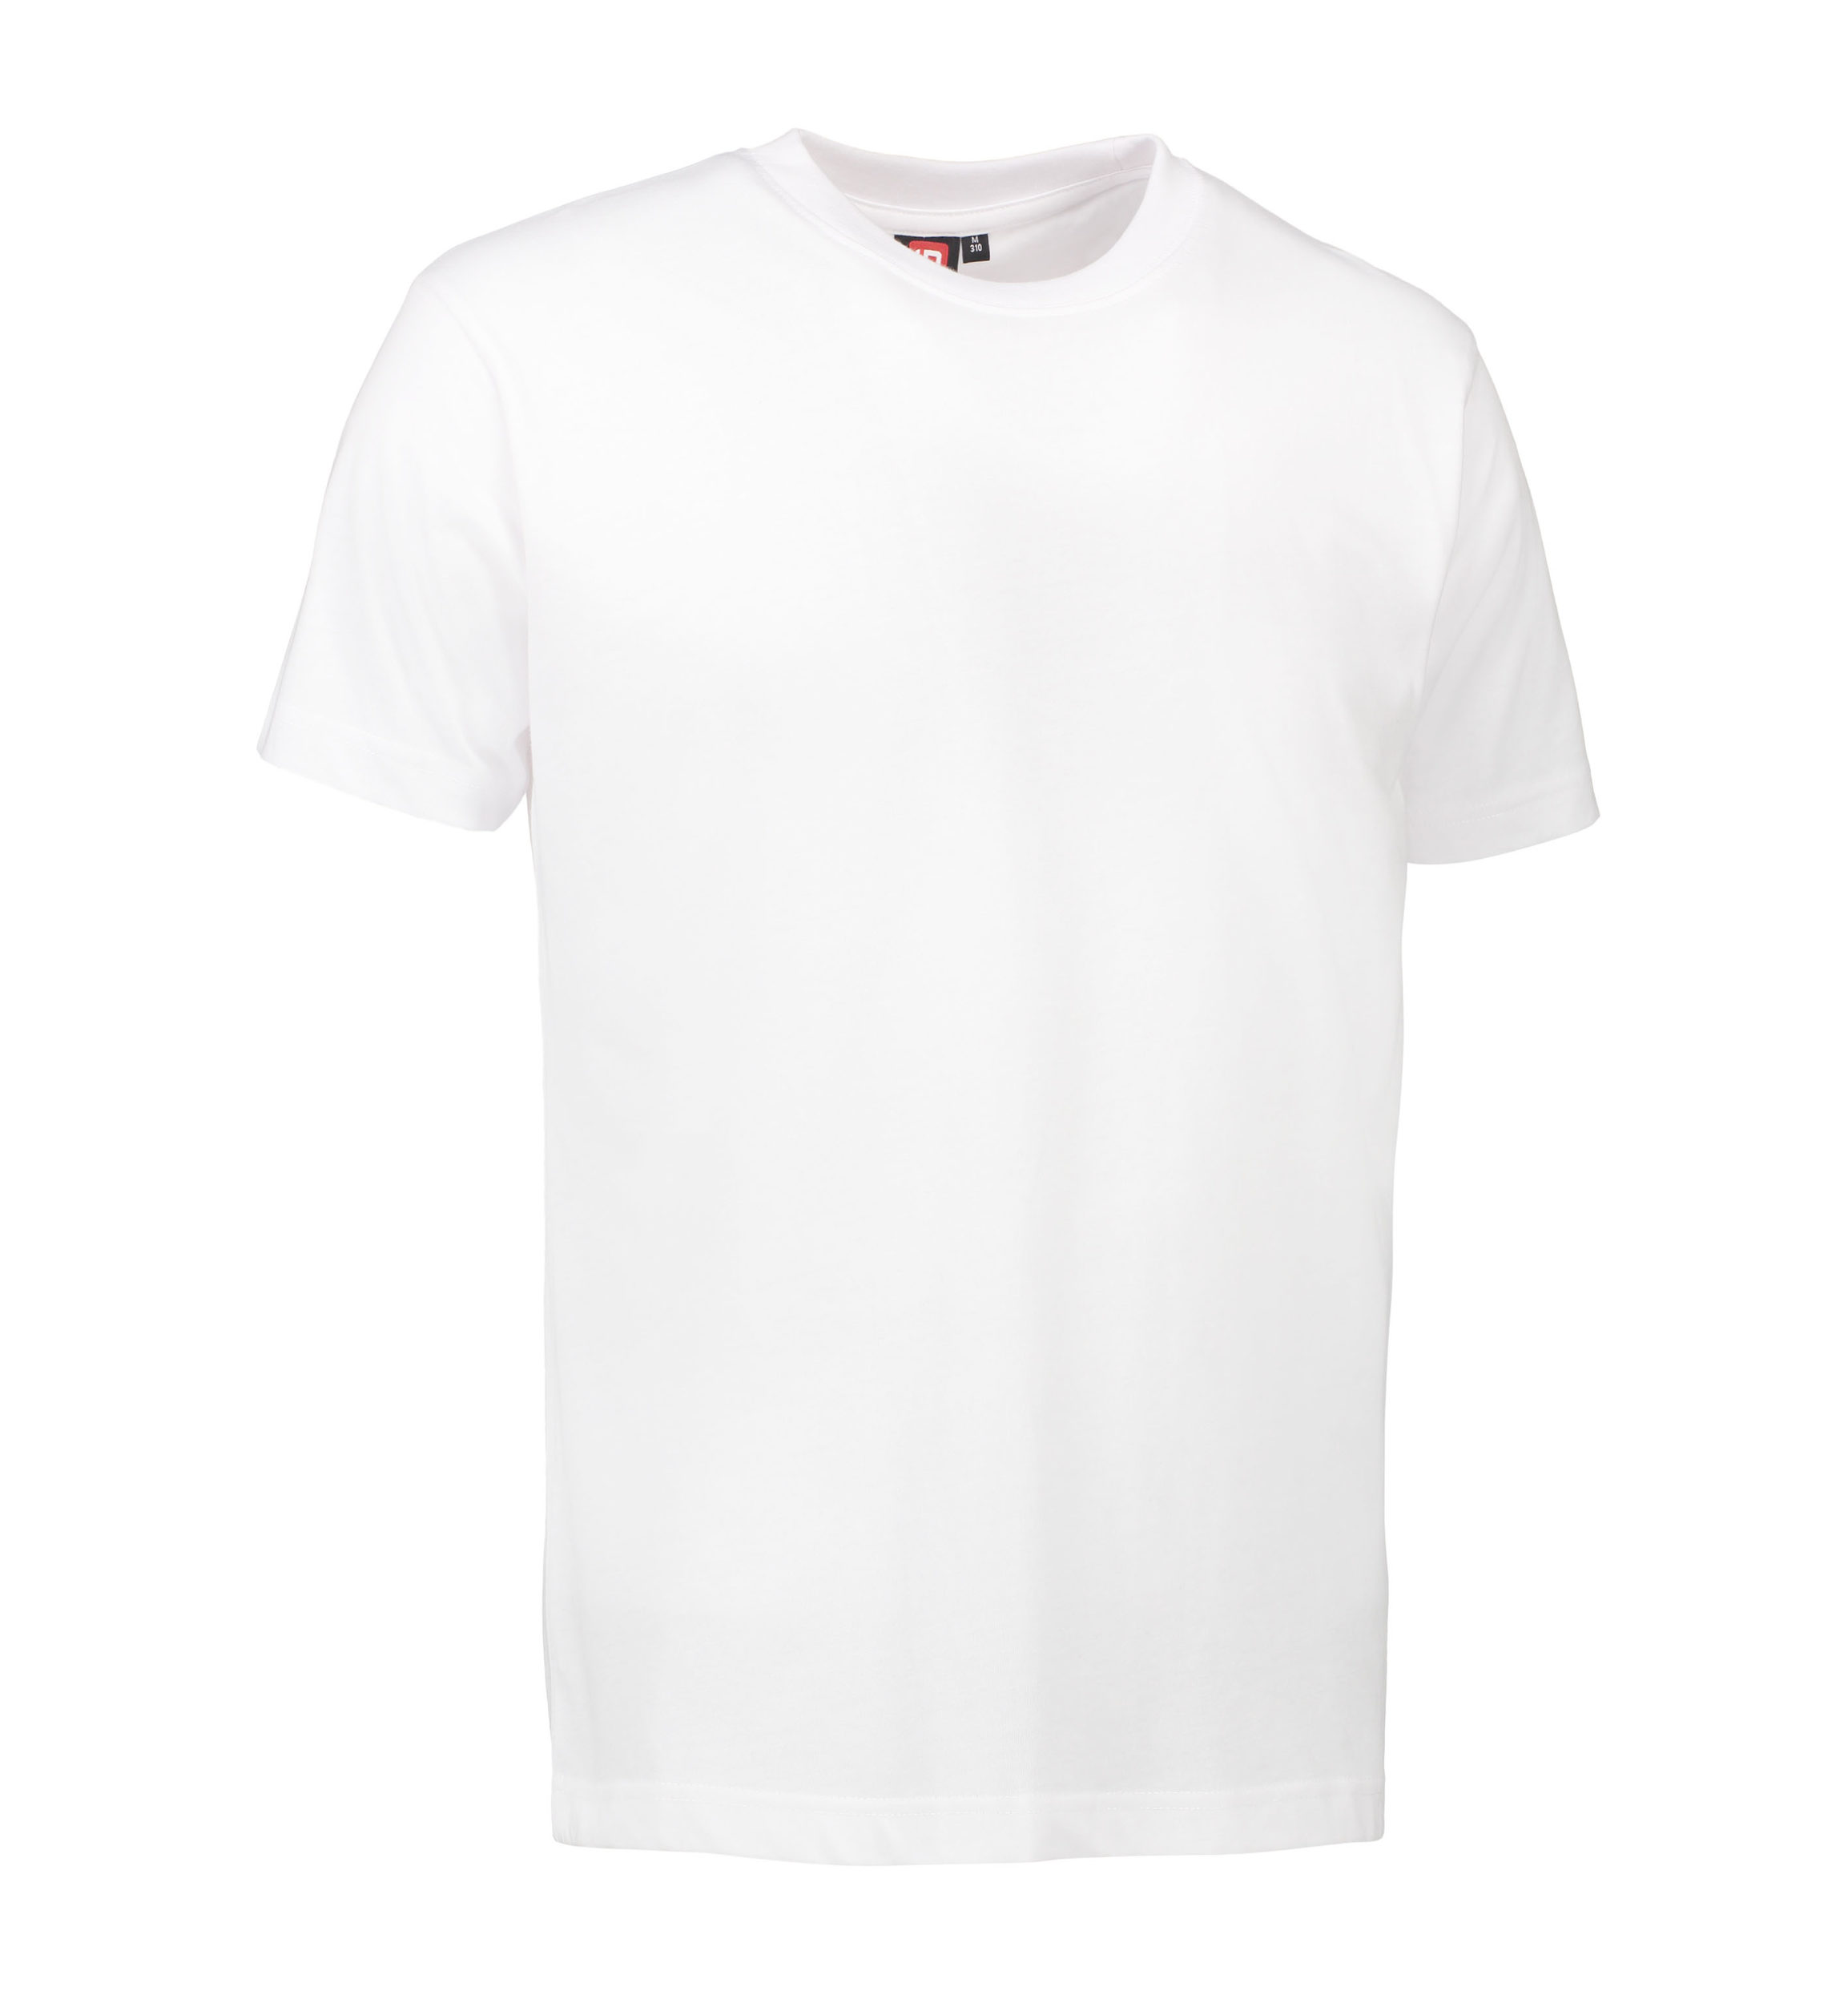 Billede af Slidstærk t-shirt i hvid til mænd - XS hos Sygeplejebutikken.dk